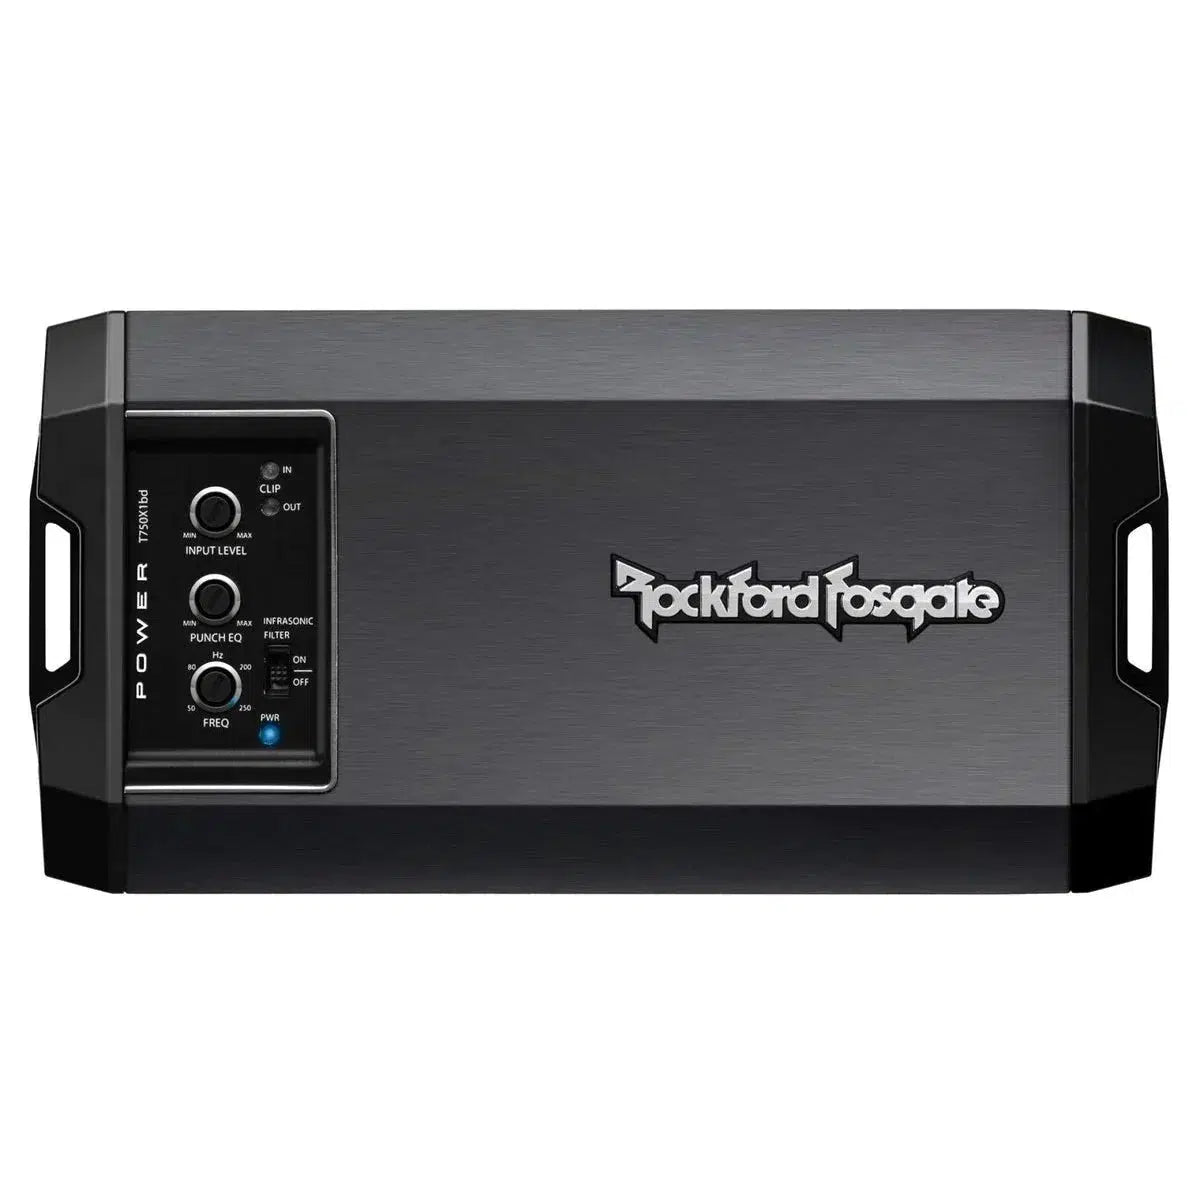 Rockford Fosgate-Power T750x1bd-1-Channel Amplifier-Masori.de